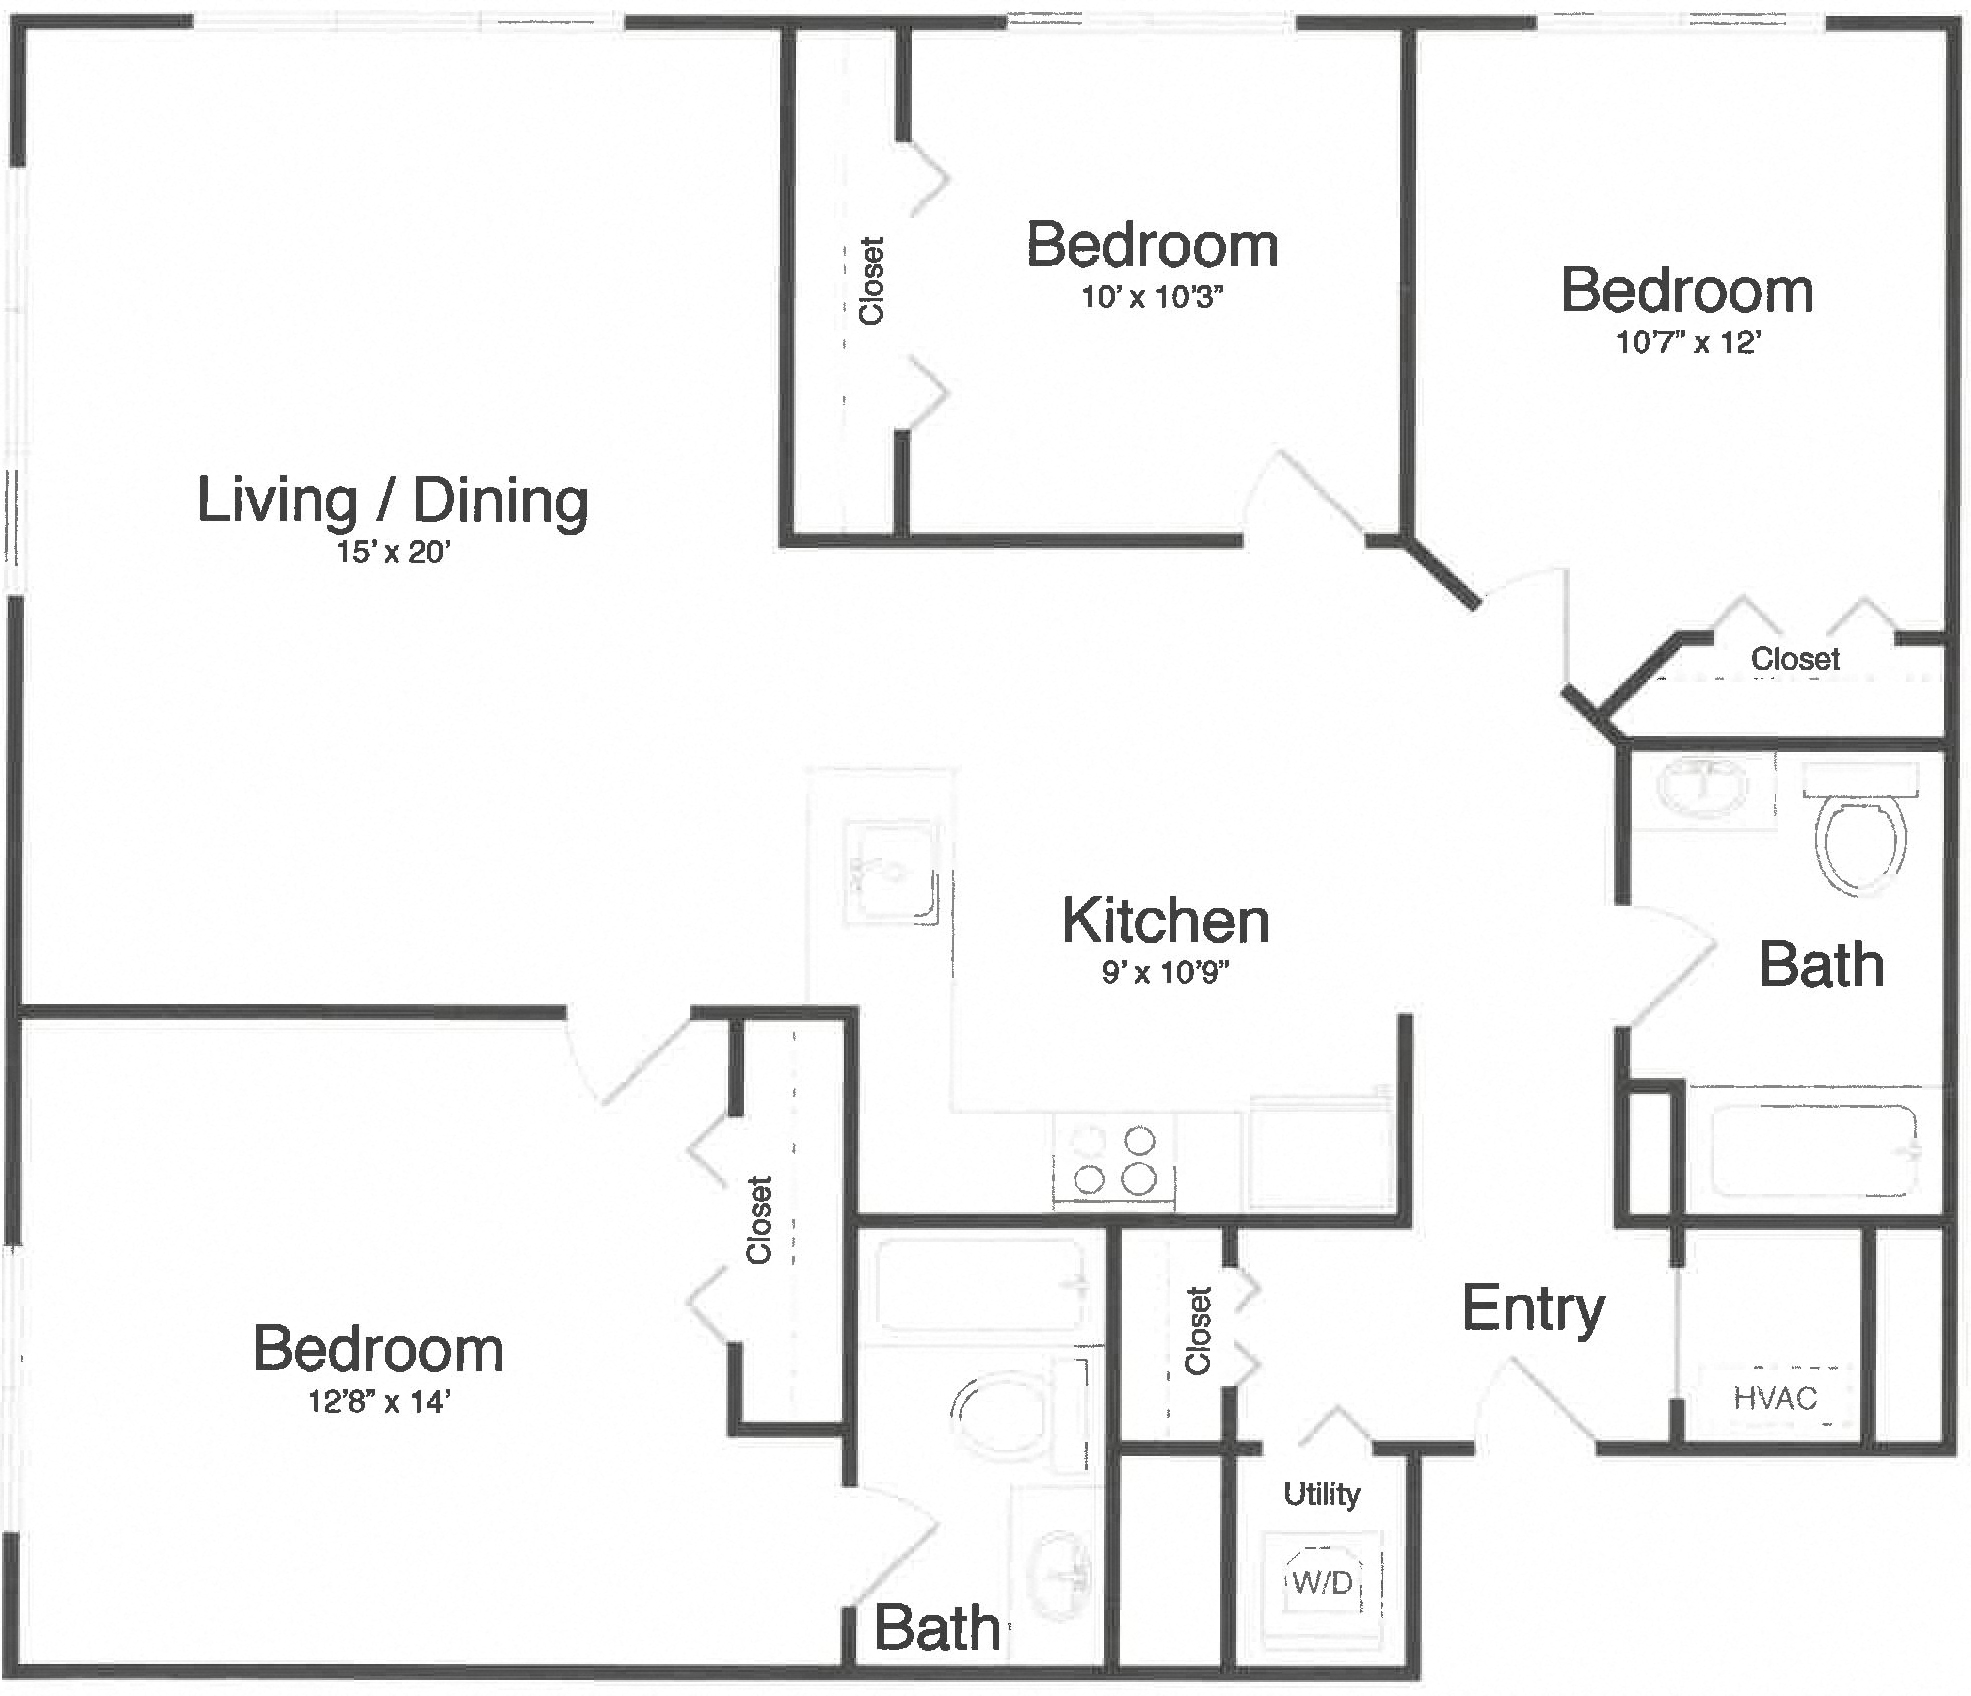 Apartment 1-4C floorplan